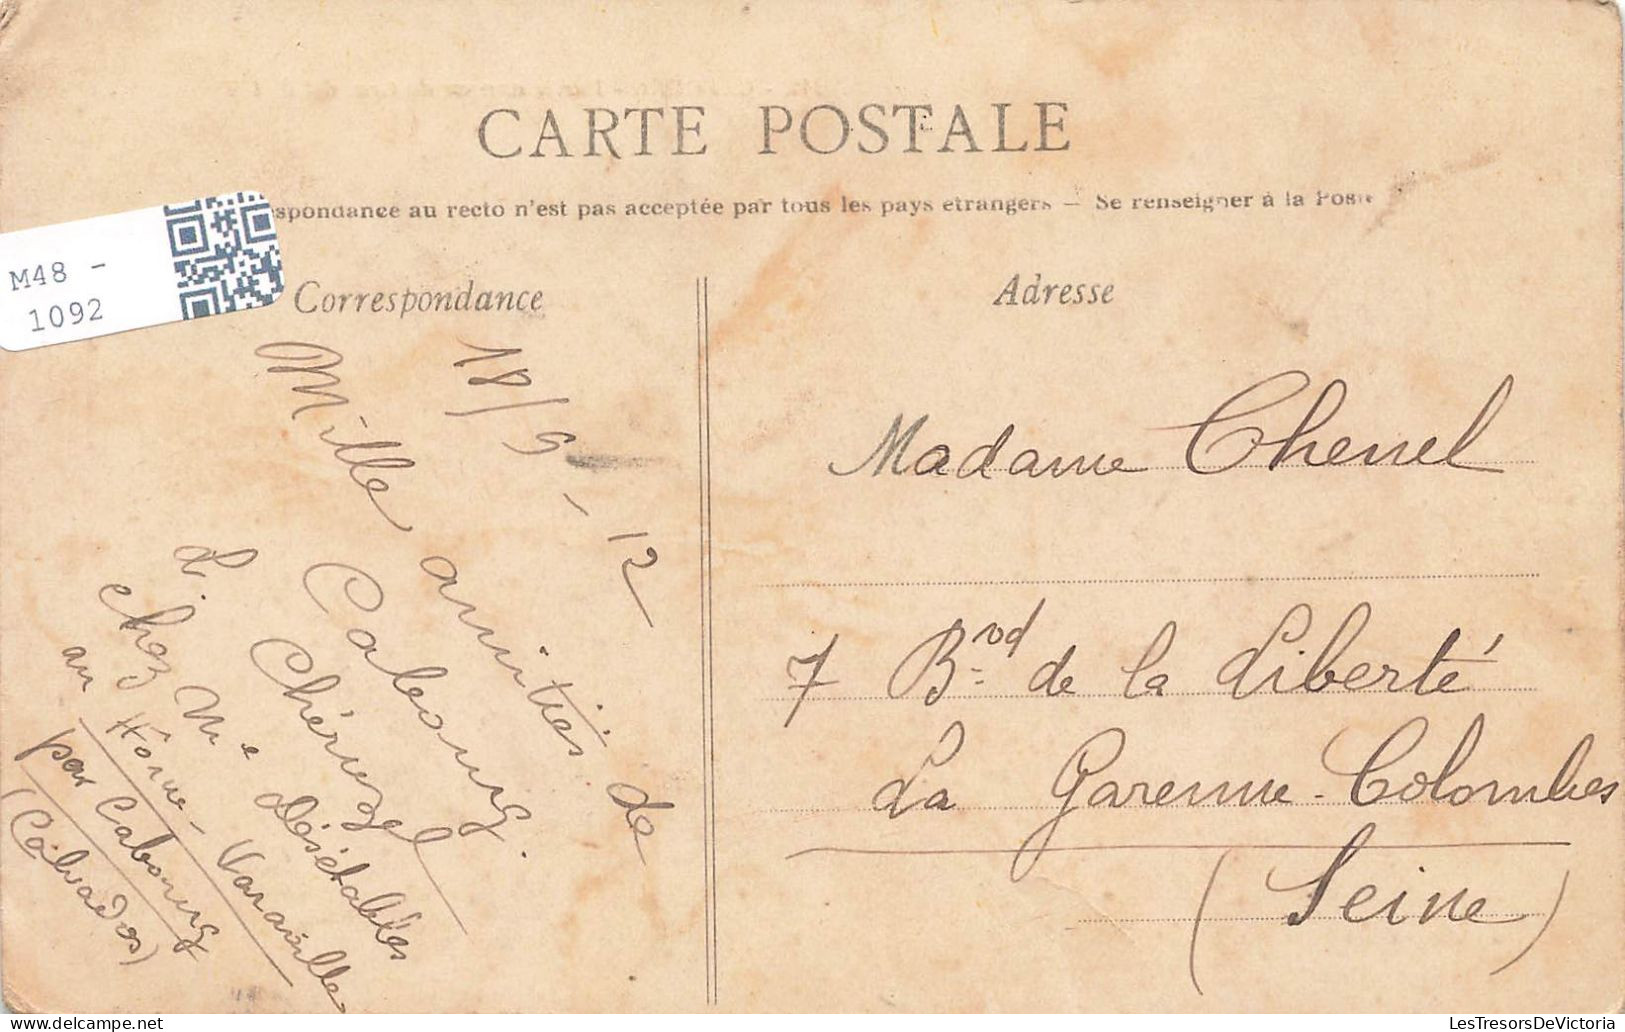 FRANCE - Cabourg - Partie Annexe Du Grand Hôtel - Carte Postale Ancienne - Cabourg